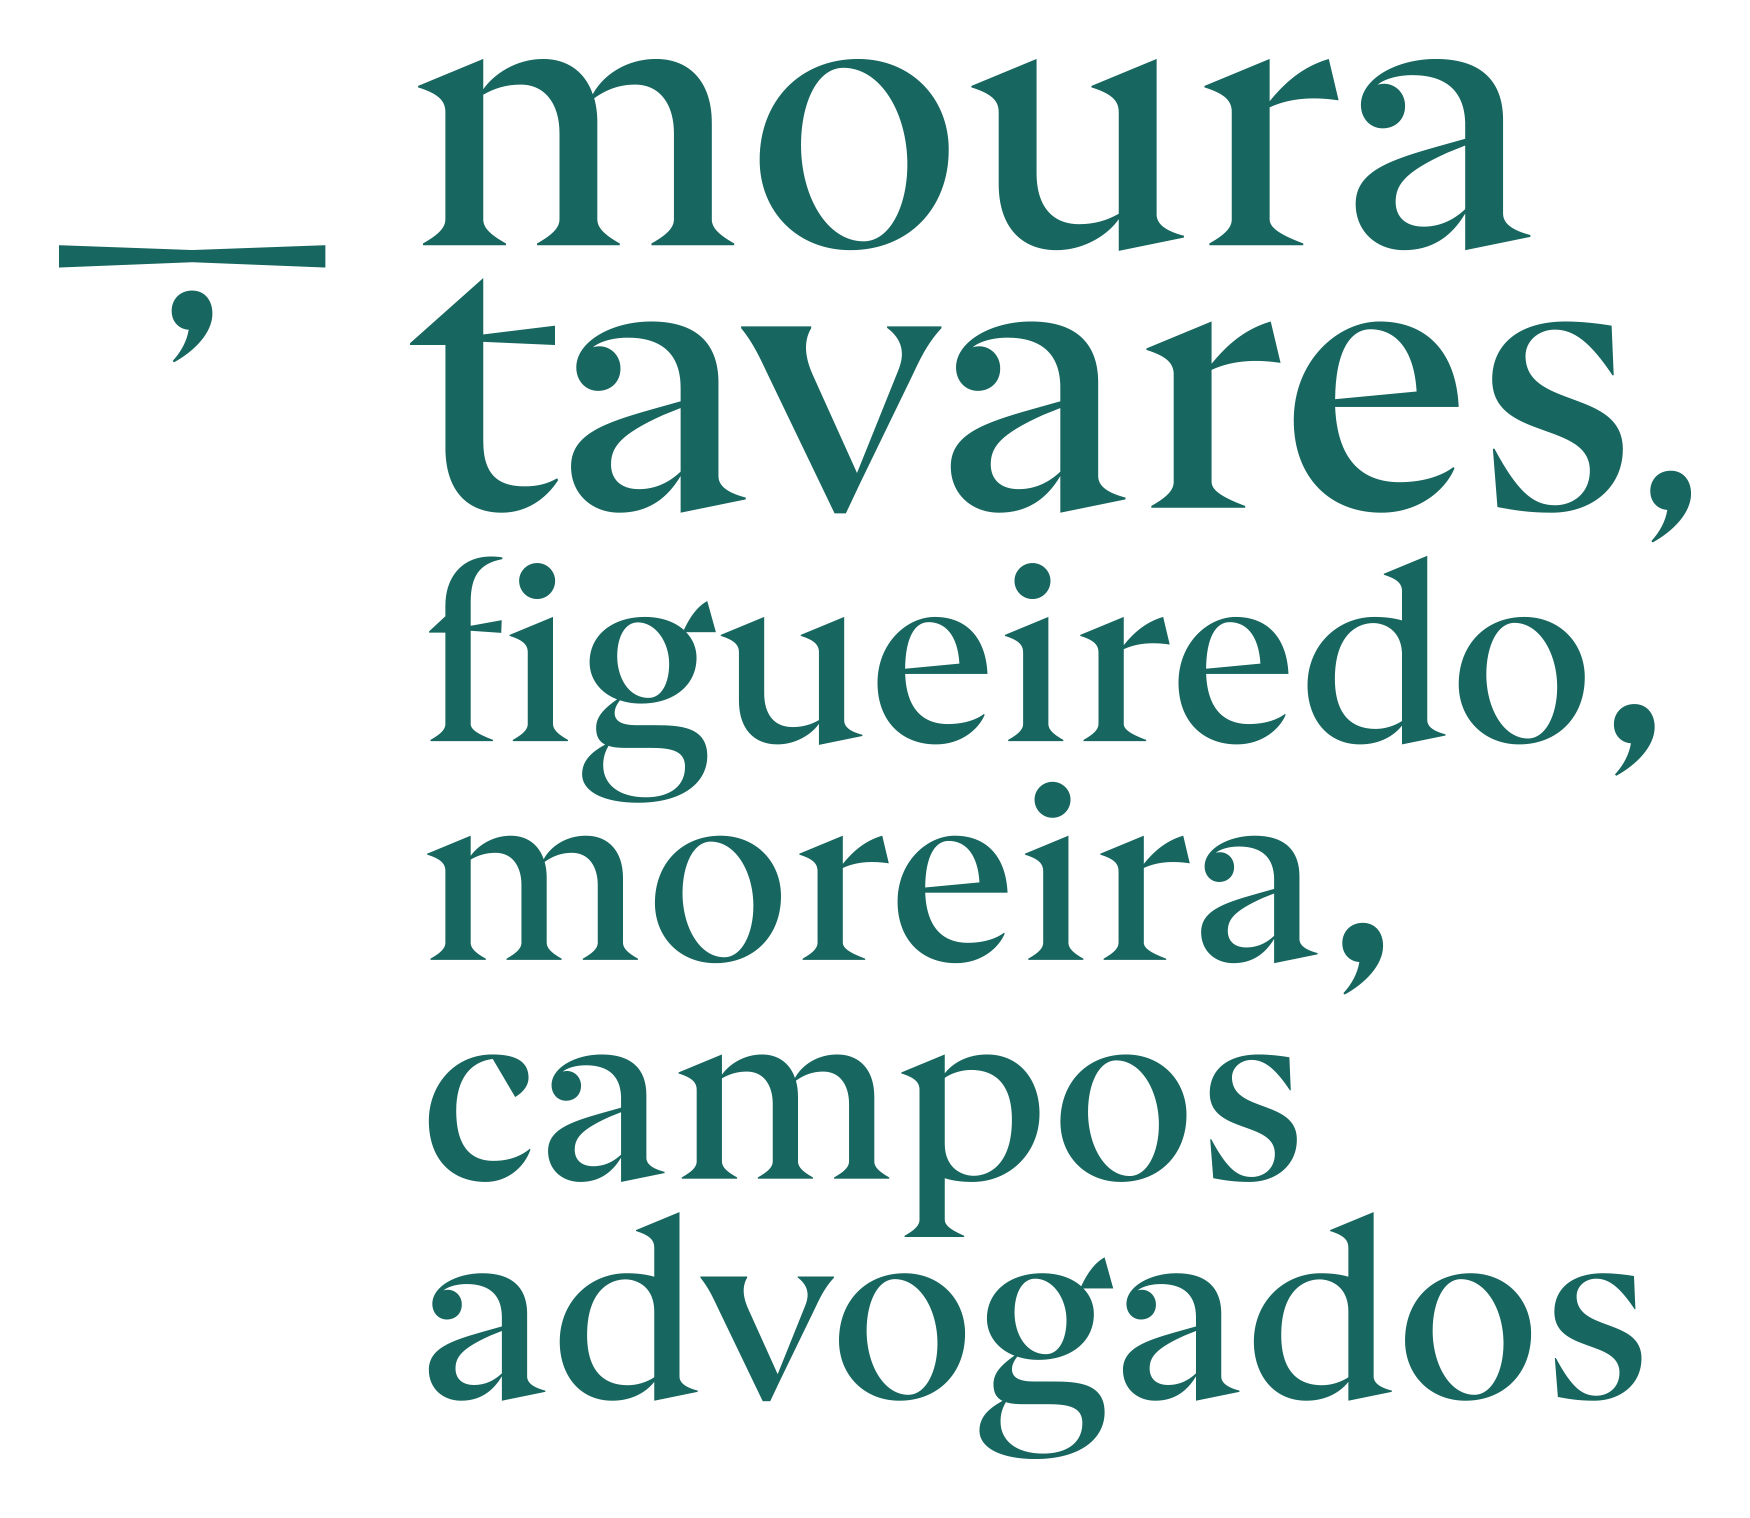 Moura Tavares, Figueiredo, Moreira e Campos